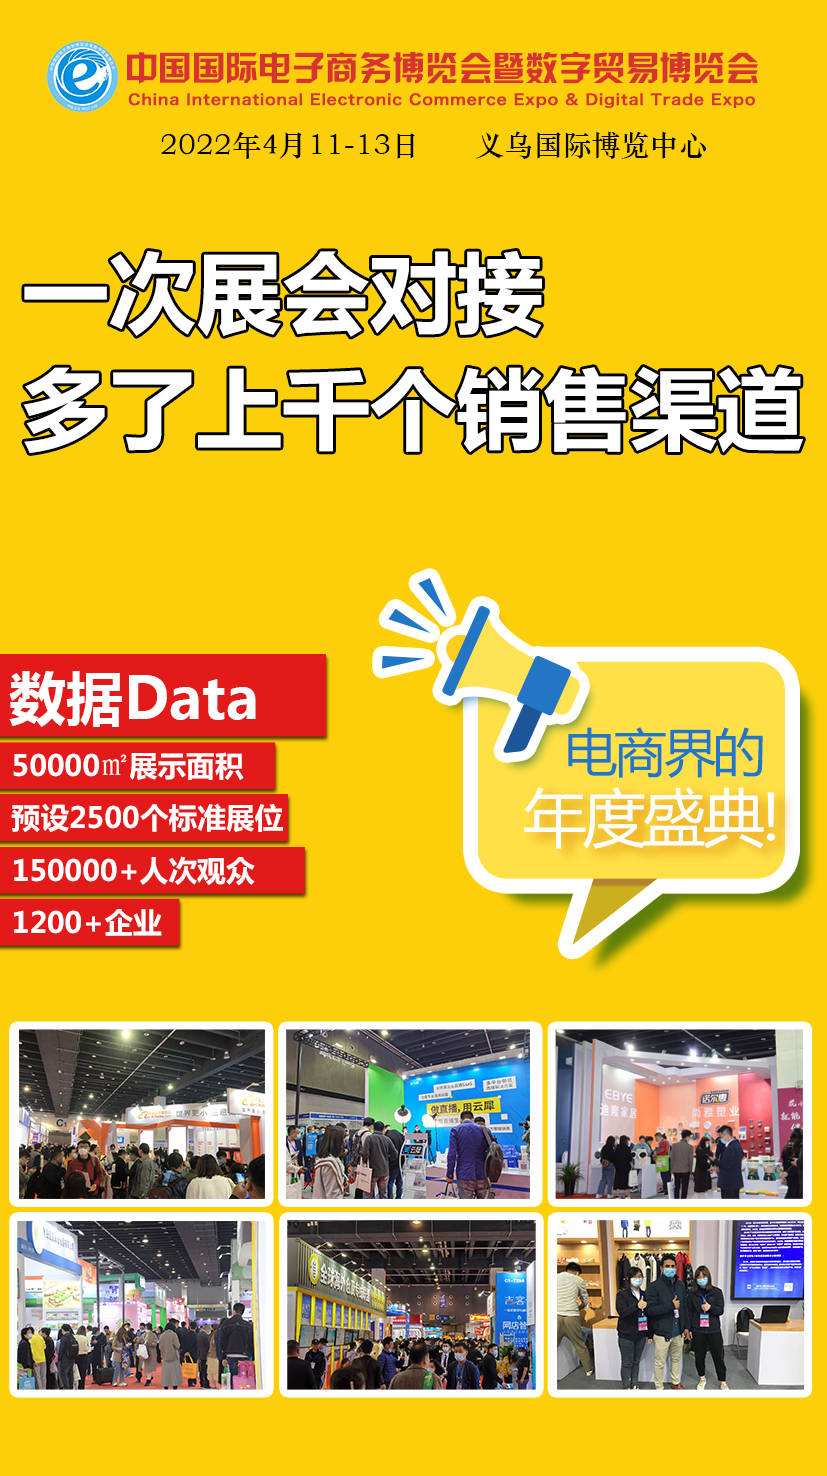 义乌市场采购贸易联网信息平台(义乌市场采购结汇平台)